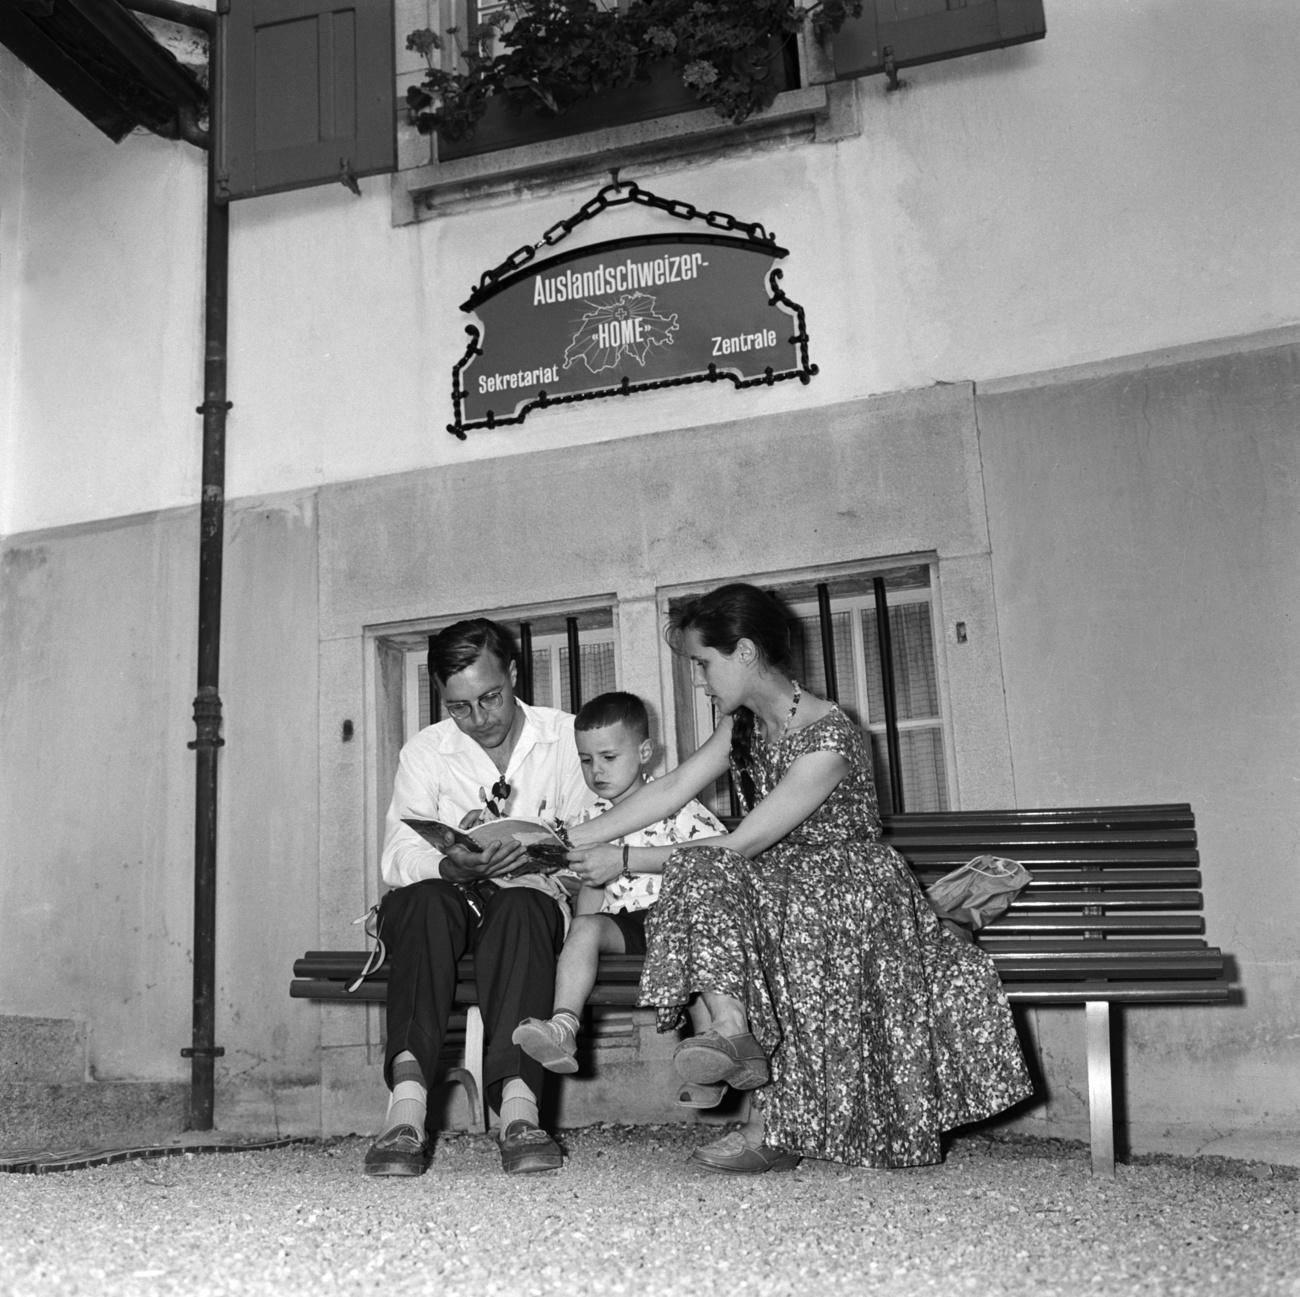 Un uomo, un bambino e una donna seduti su una panchina.